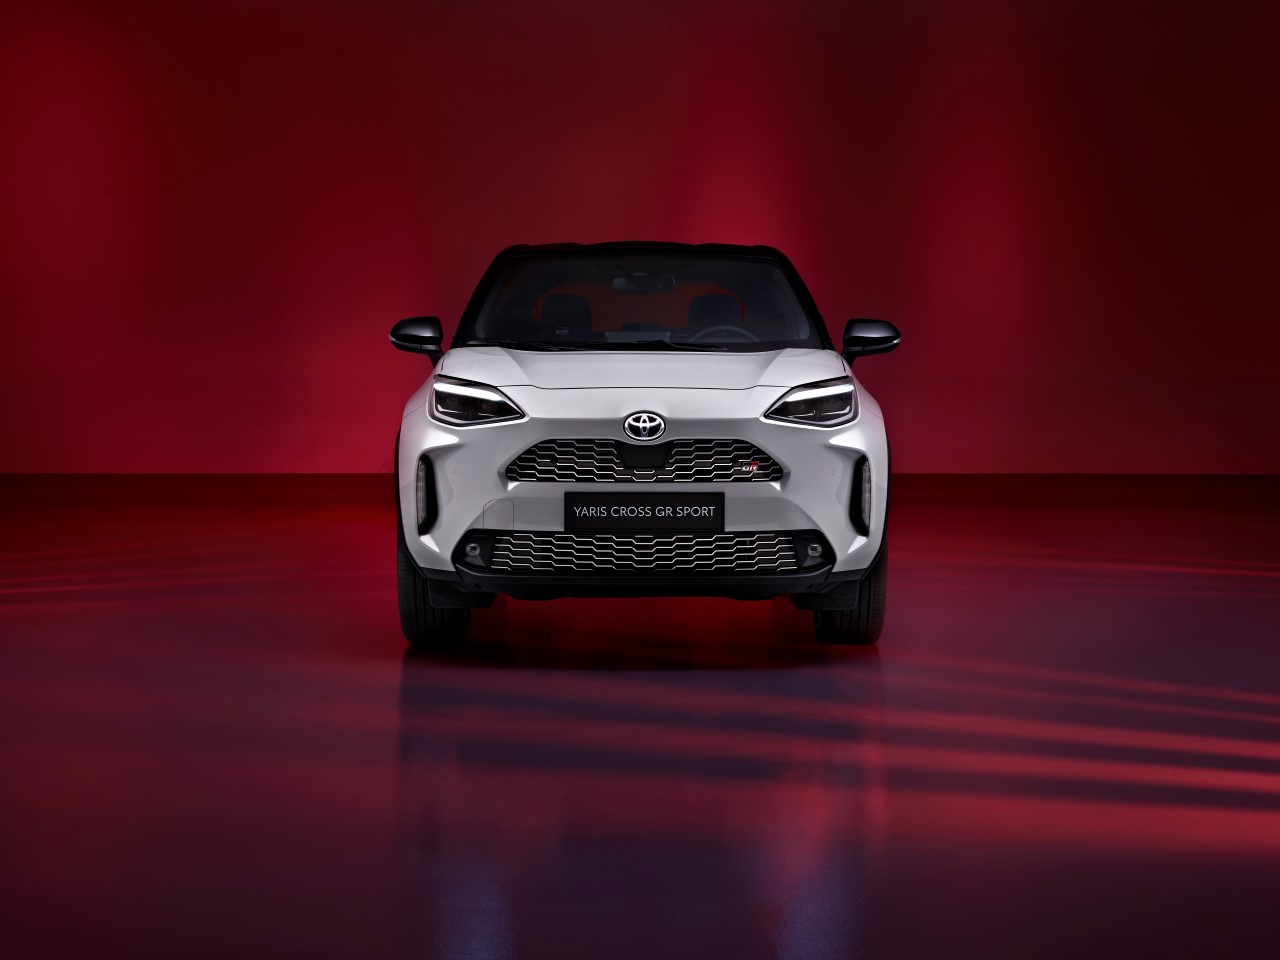 Nowa Toyota Yaris Cross GR SPORT. Tuning zawieszenia i sportowa stylistyka